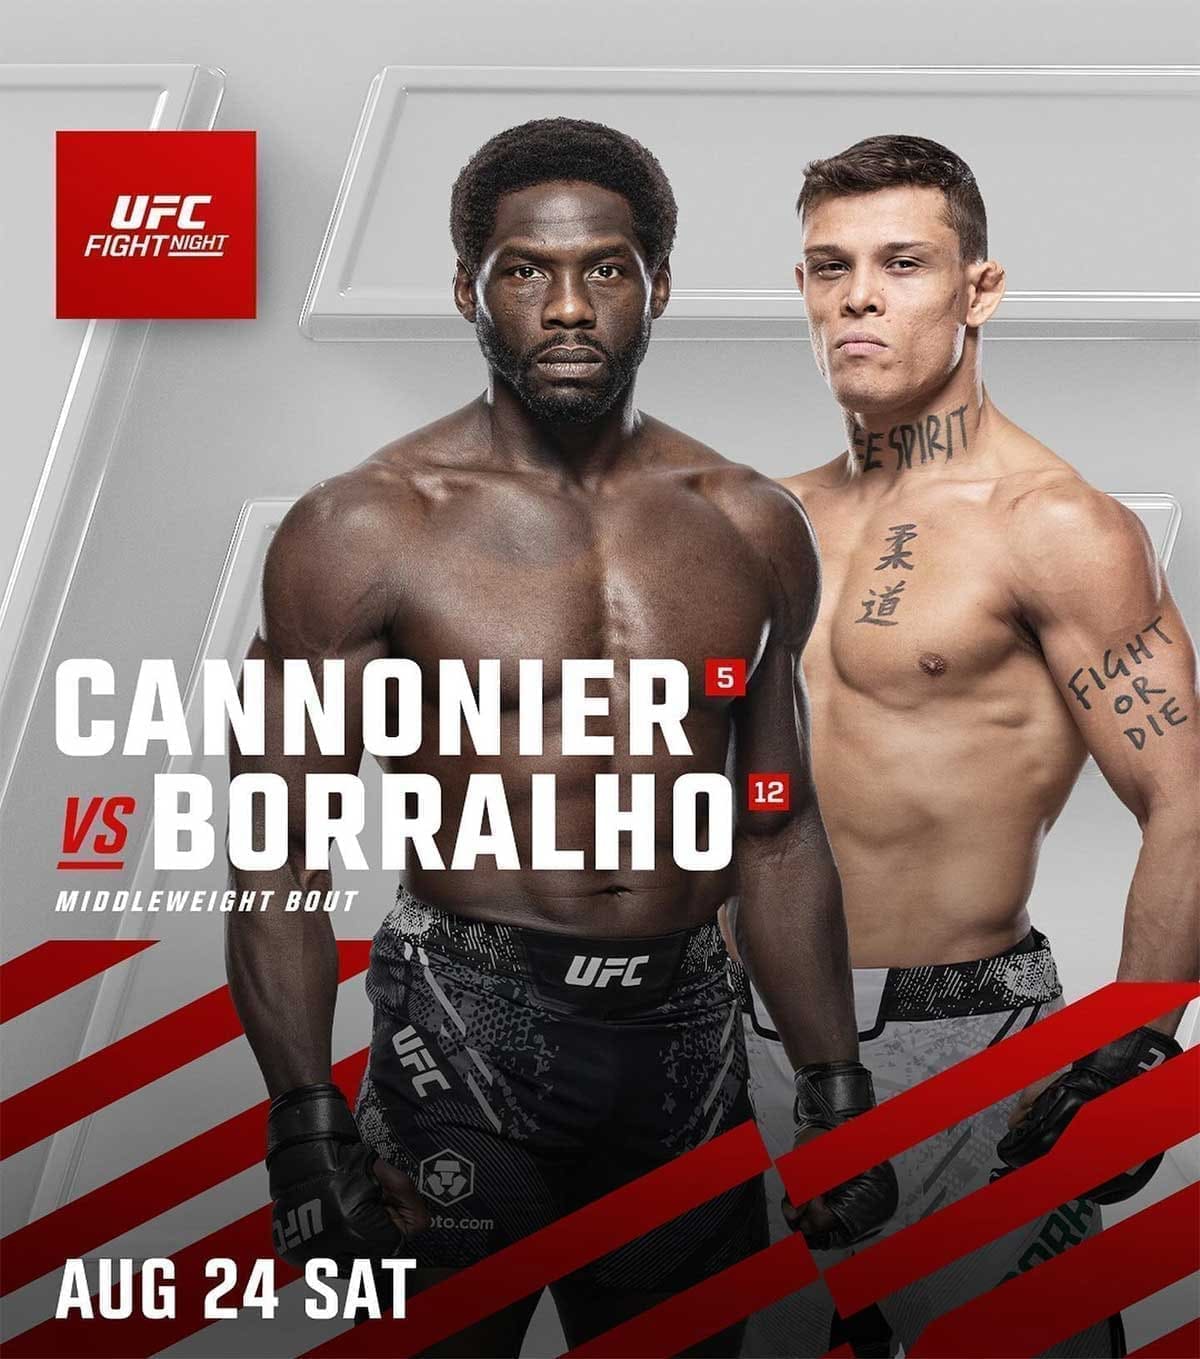 UFC on ESPN 62: Каннонир - Борральо дата проведения, кард, участники и результаты